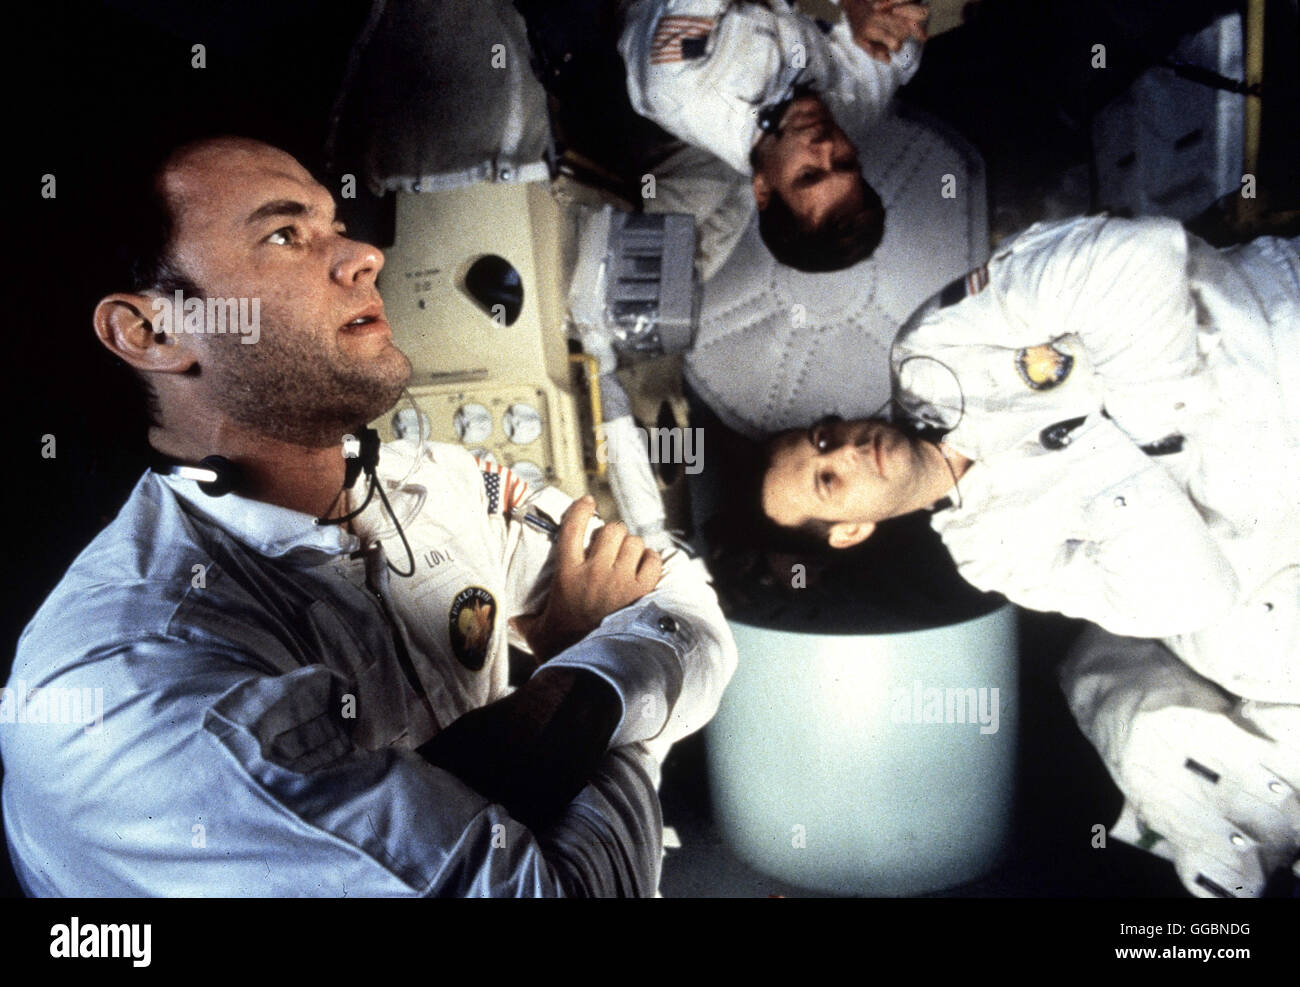 APOLLO 13 / Apollo 13 USA 1995 / Ron Howard Am 10. April 1970 starten die Astronauten Jim Lovell, Bill Paxton und Jack Swigert mit der 'Apollo 13' zu einer Mondmission. Drei Tage später explodiert der Sauerstofftank. Die Raumkapsel läßt sich nicht mehr steuern. Für die Astronauten bedeutet das: 'Houston, wir haben ein Problem...' - TOM HANKS (Jim Lovell), FRED HAISE (Bill Paxton) und KEVIN BACON (Jack Swigert) in der Schwerelosigkeit. Regie: Ron Howard aka. Apollo 13 Stock Photo